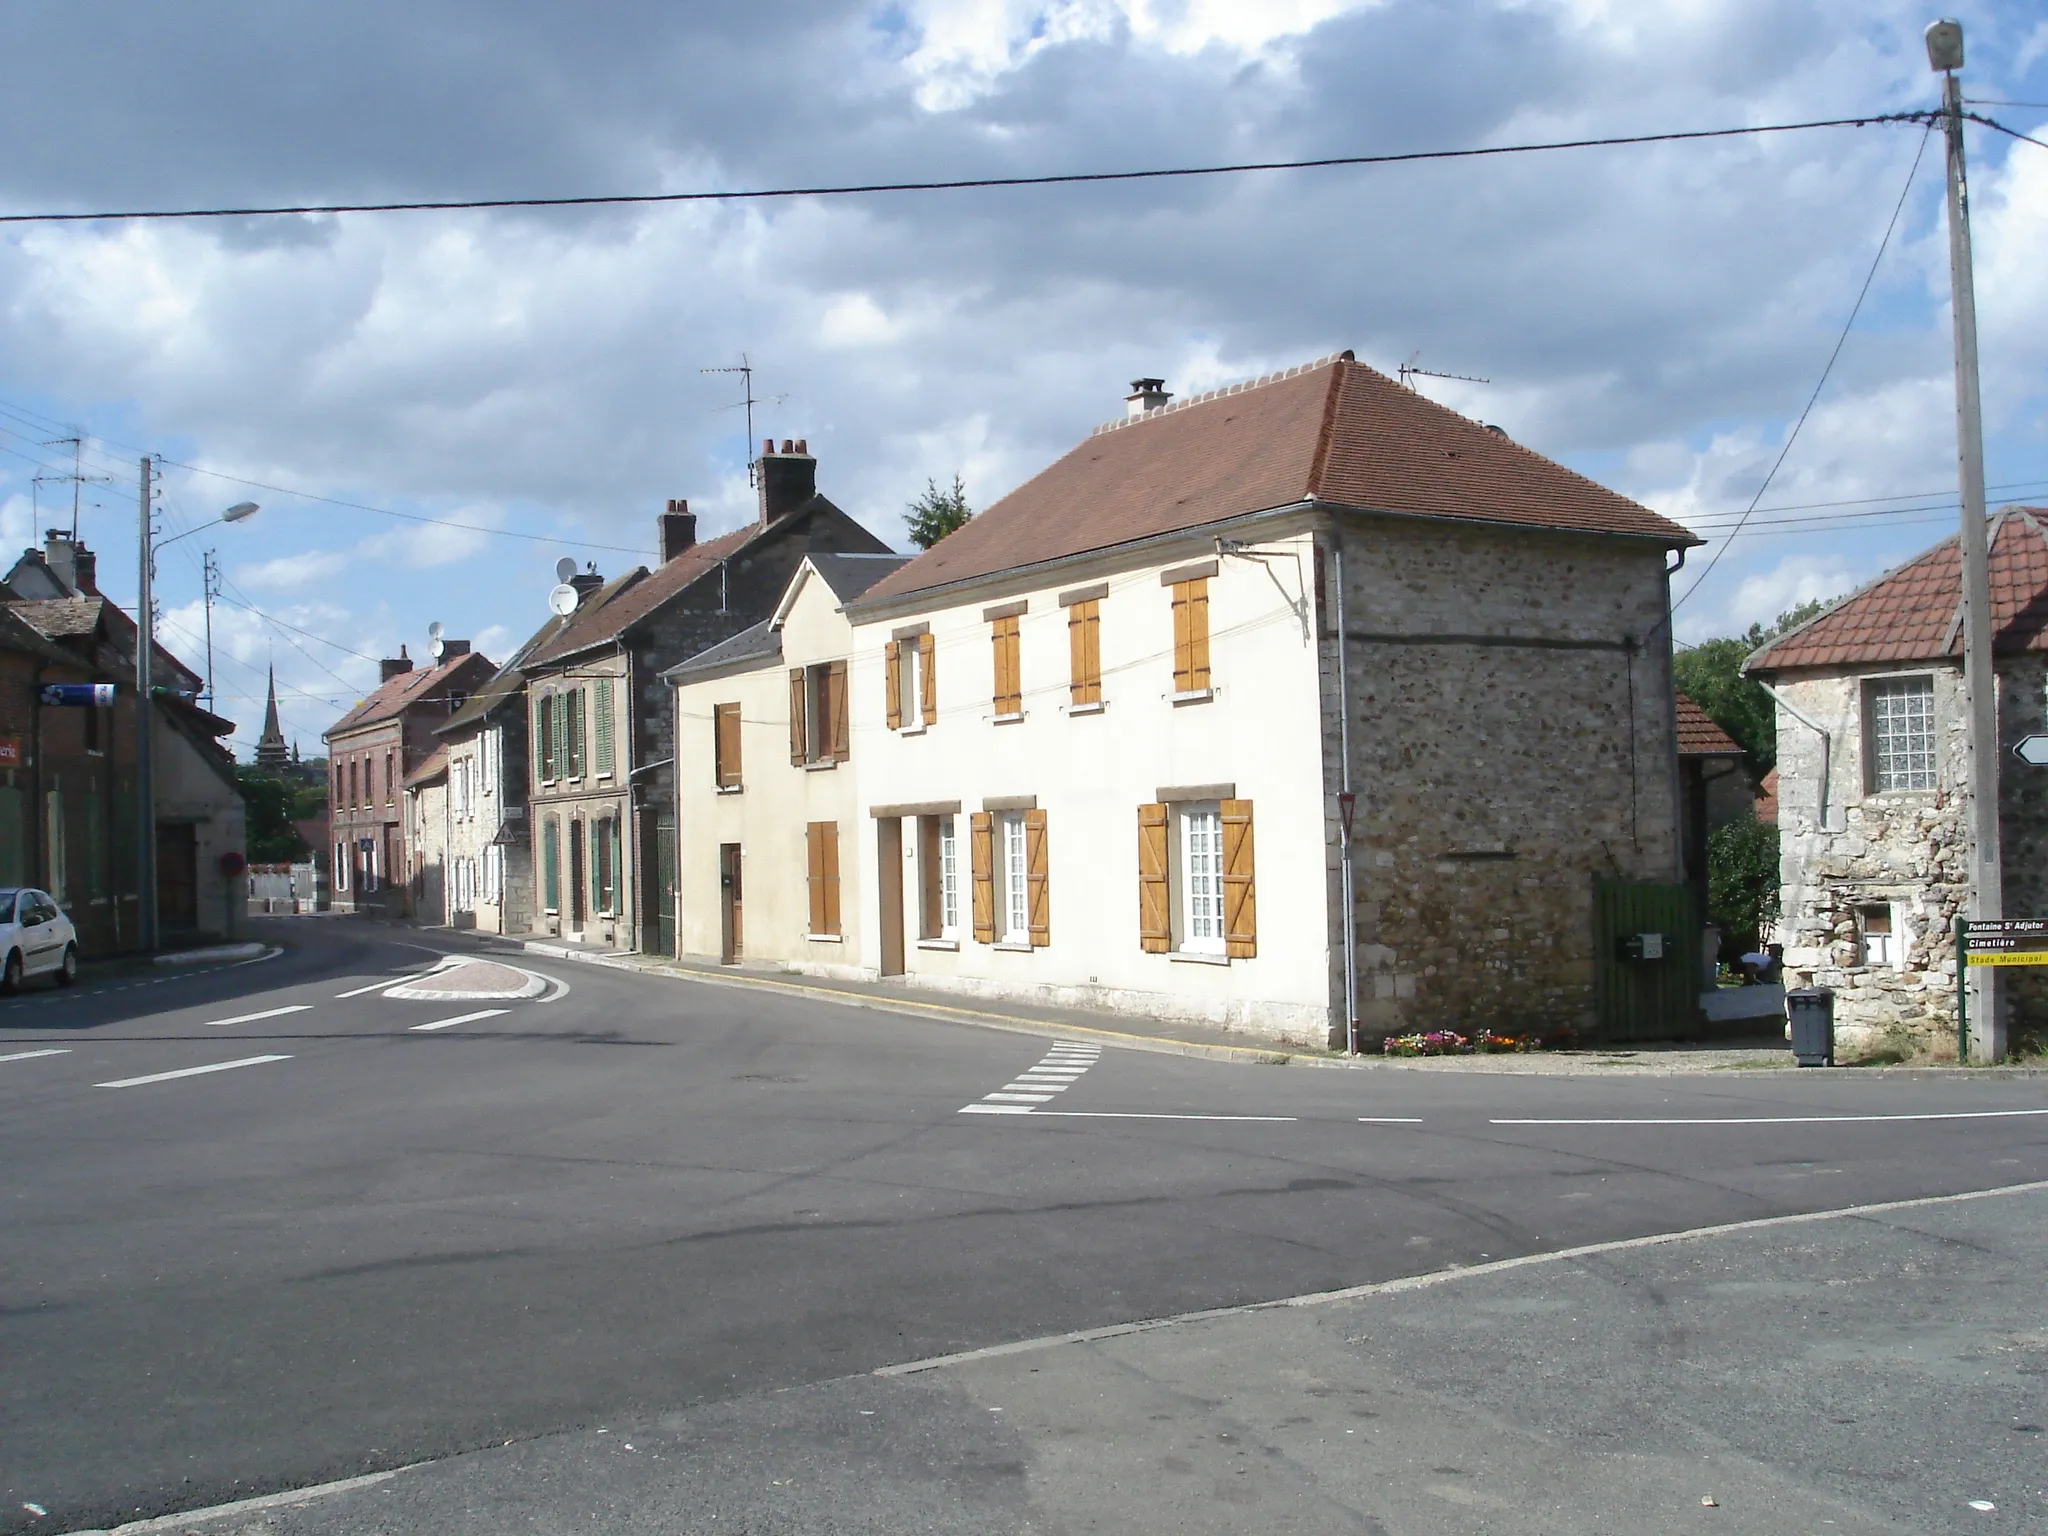 Photo showing: Ville de Blaru se trouvant dans les Yvelines (France) - 2006.

Auteur : Jean-Claude Perez